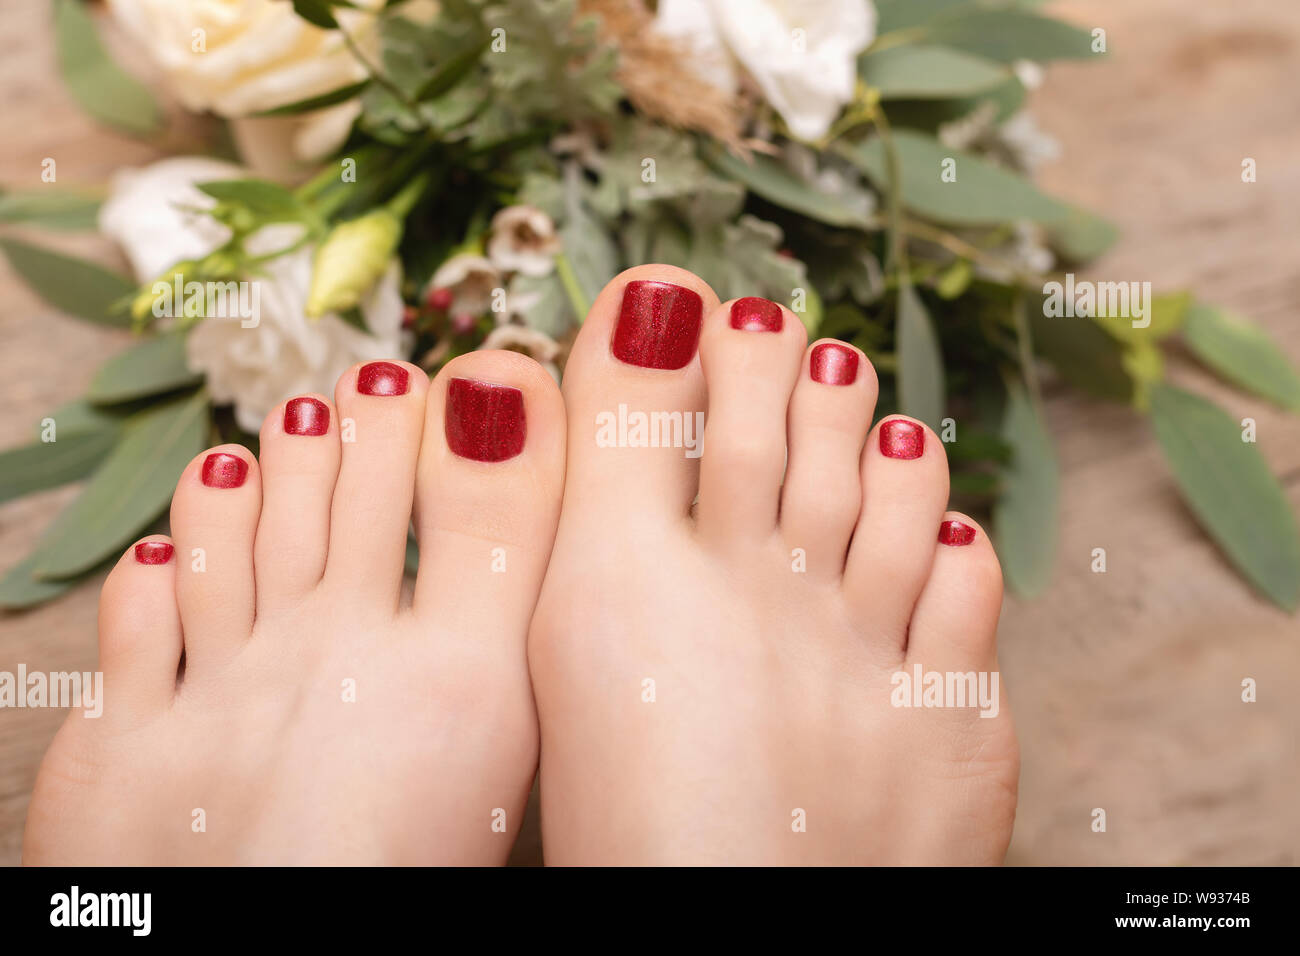 Belli i piedi femminili con red glitter pedicure. Foto Stock